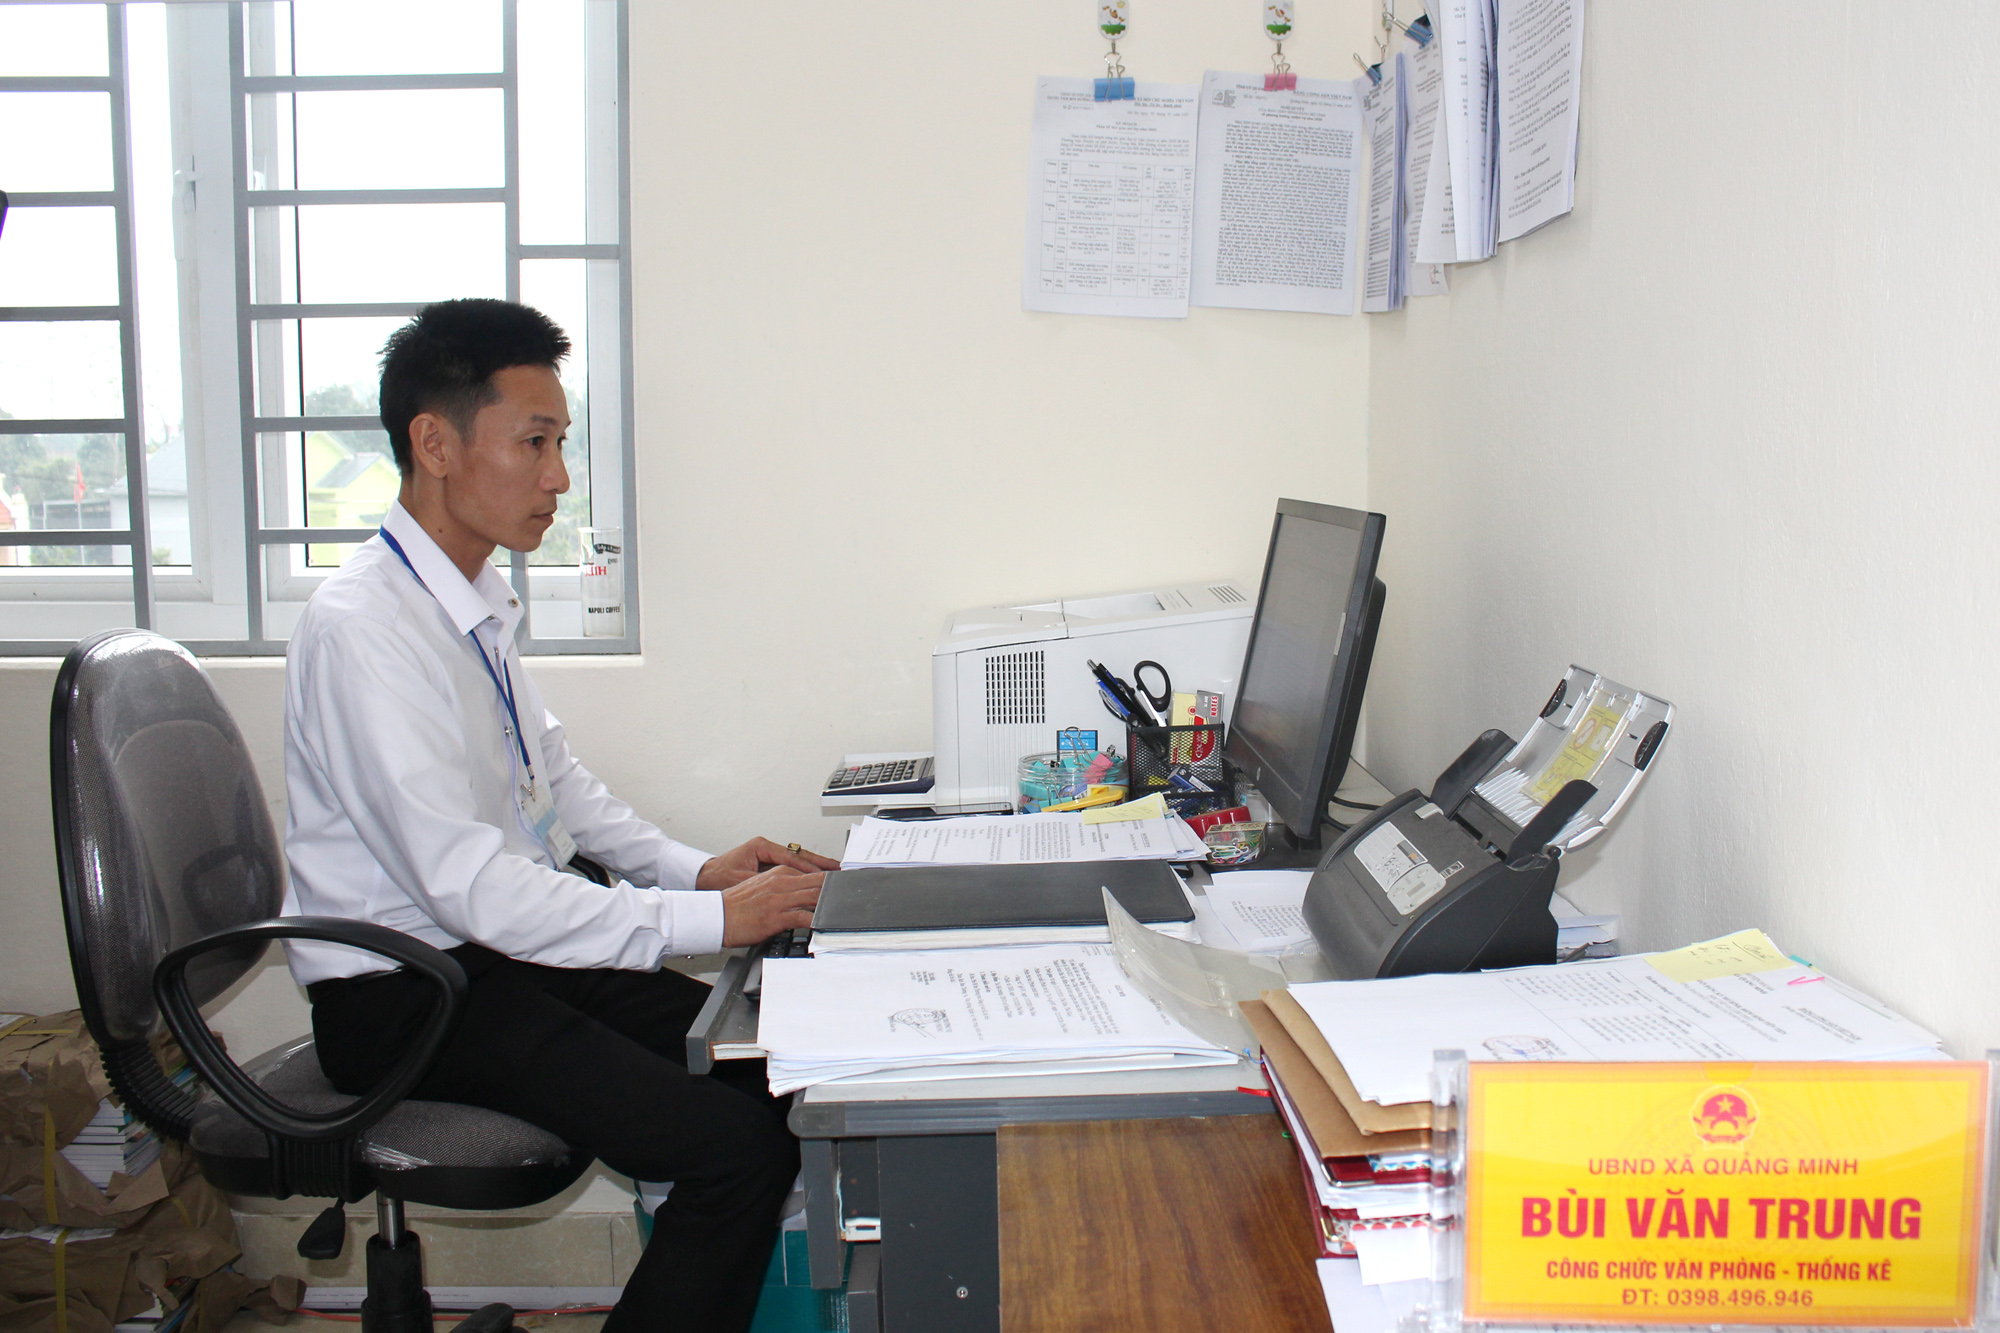 Cán bộ, công chức xã Quảng Minh (Hải Hà) hoạt động ổn định, nền nếp ngay sau khi sáp nhập. Ảnh chụp ngày 11/3/2020.